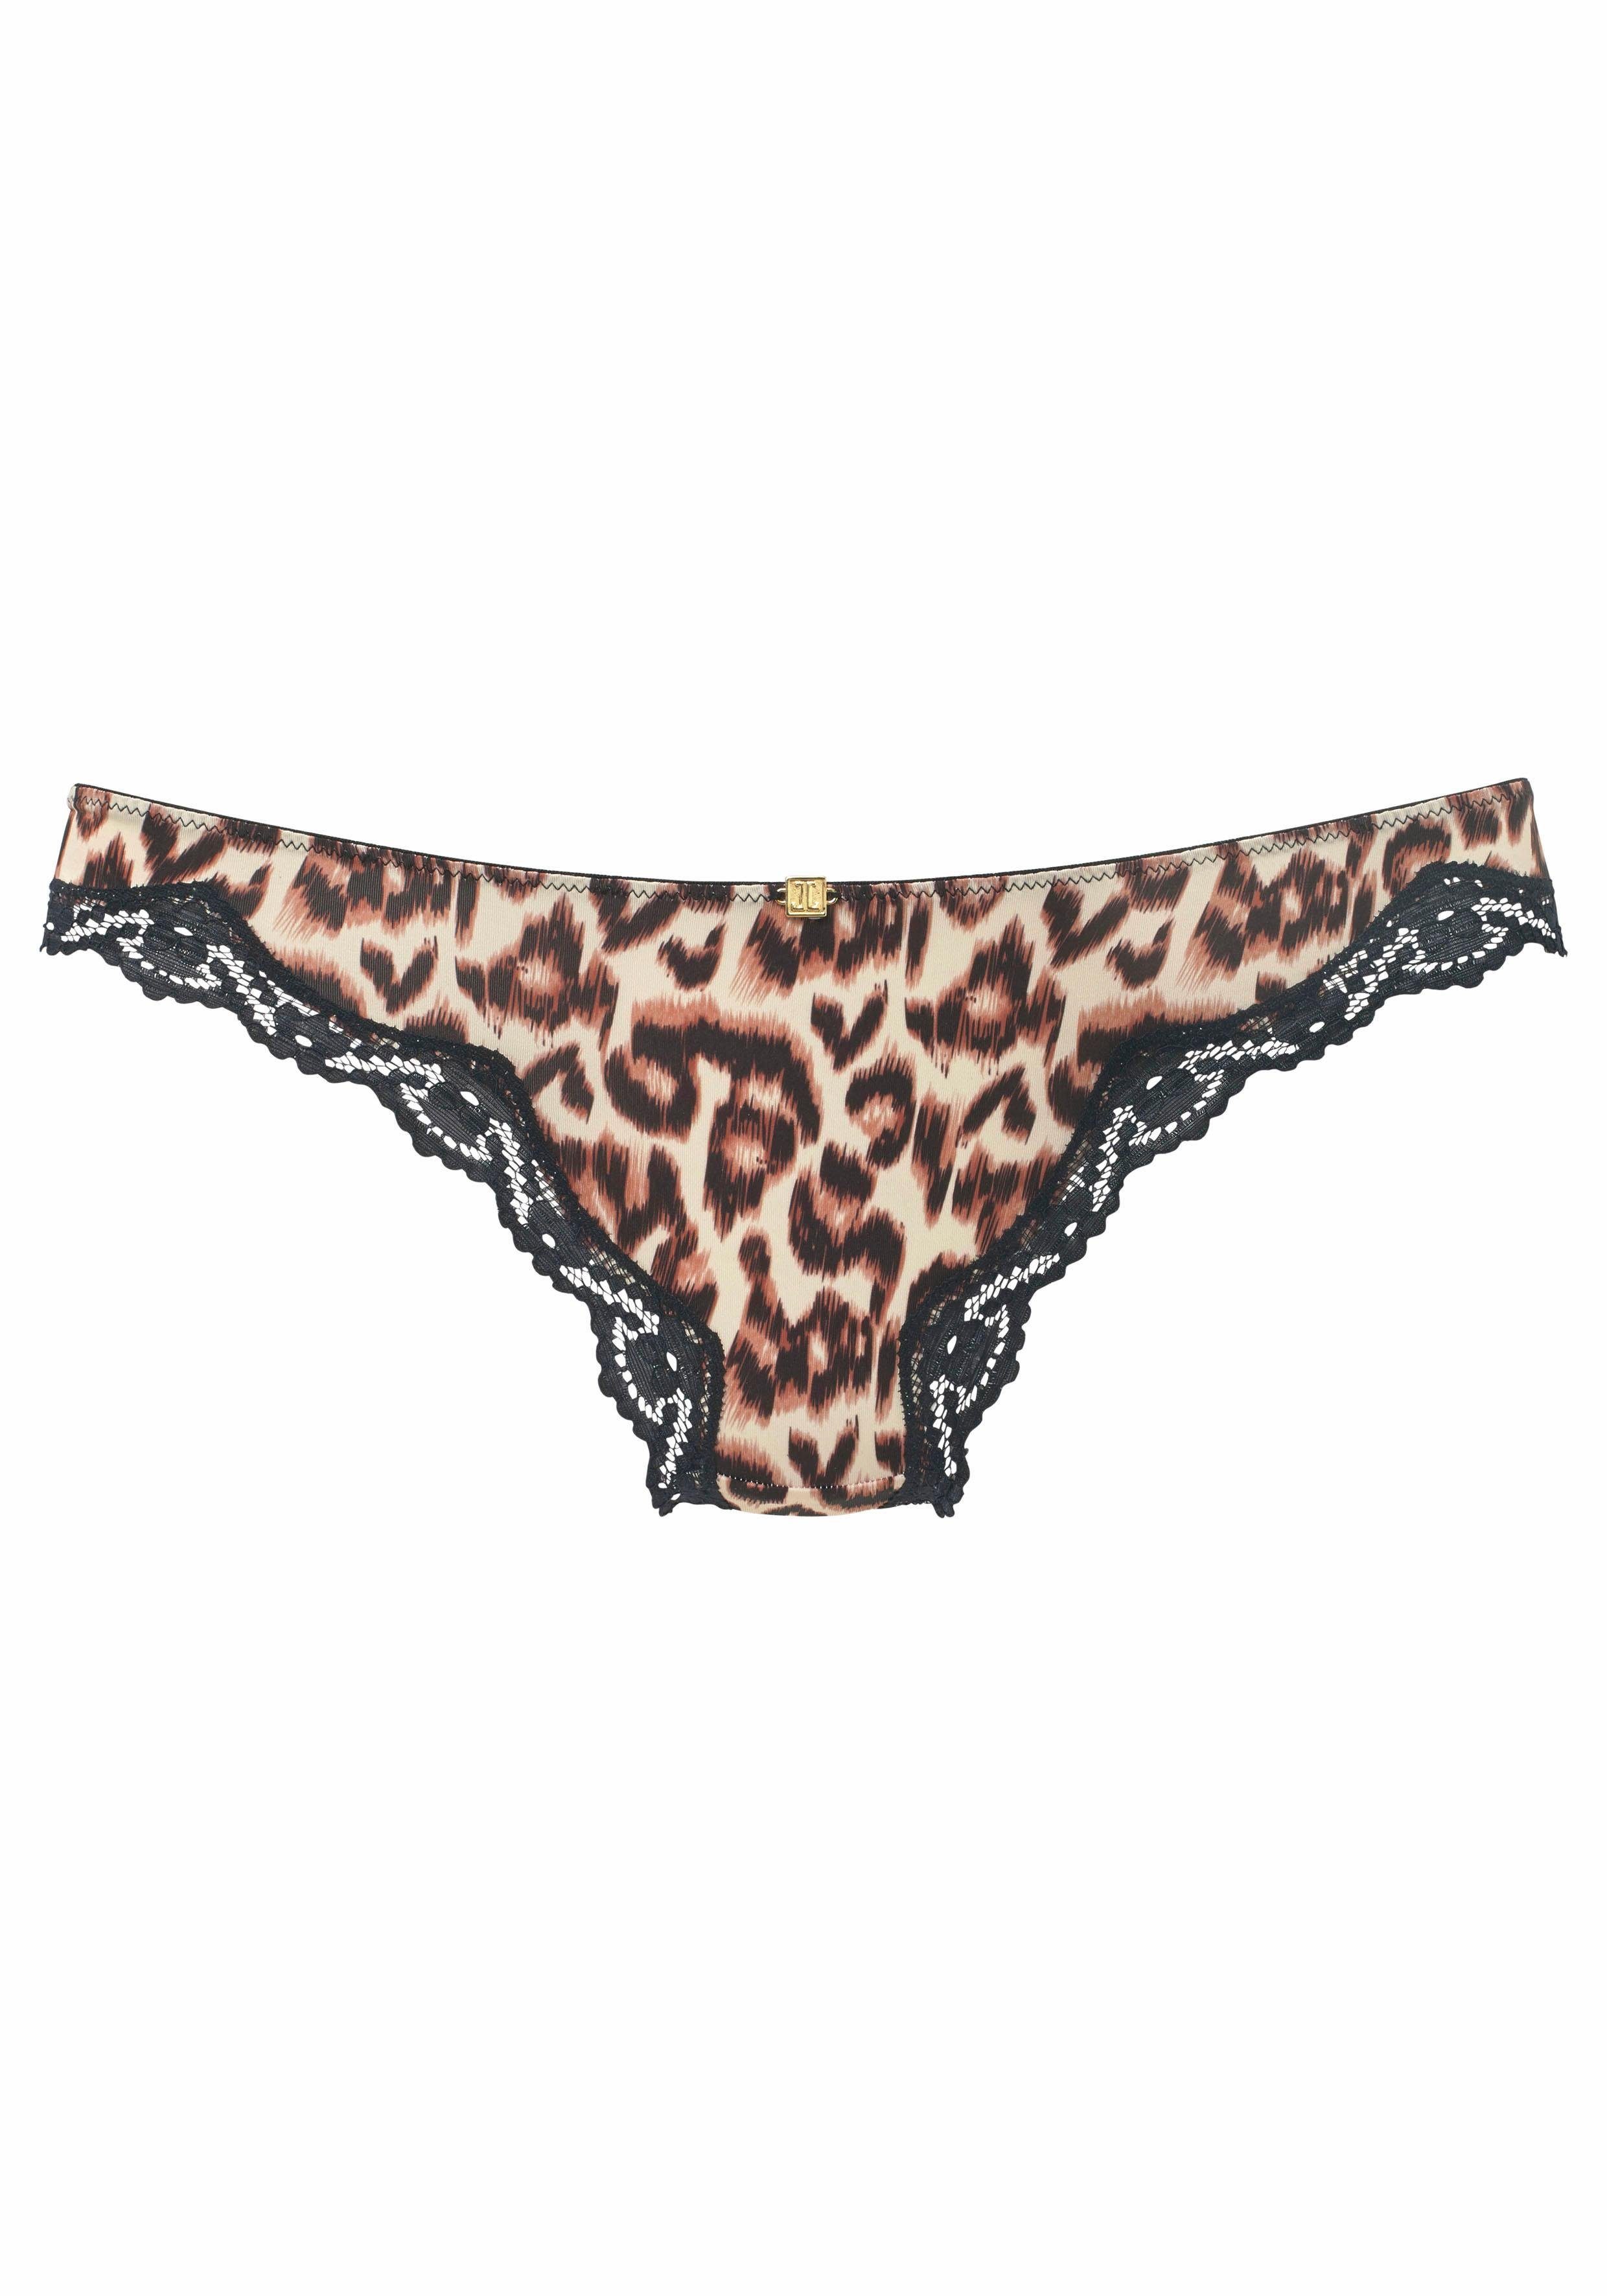 Wäsche/Bademode Unterhosen JETTE String mit Leopardenmuster